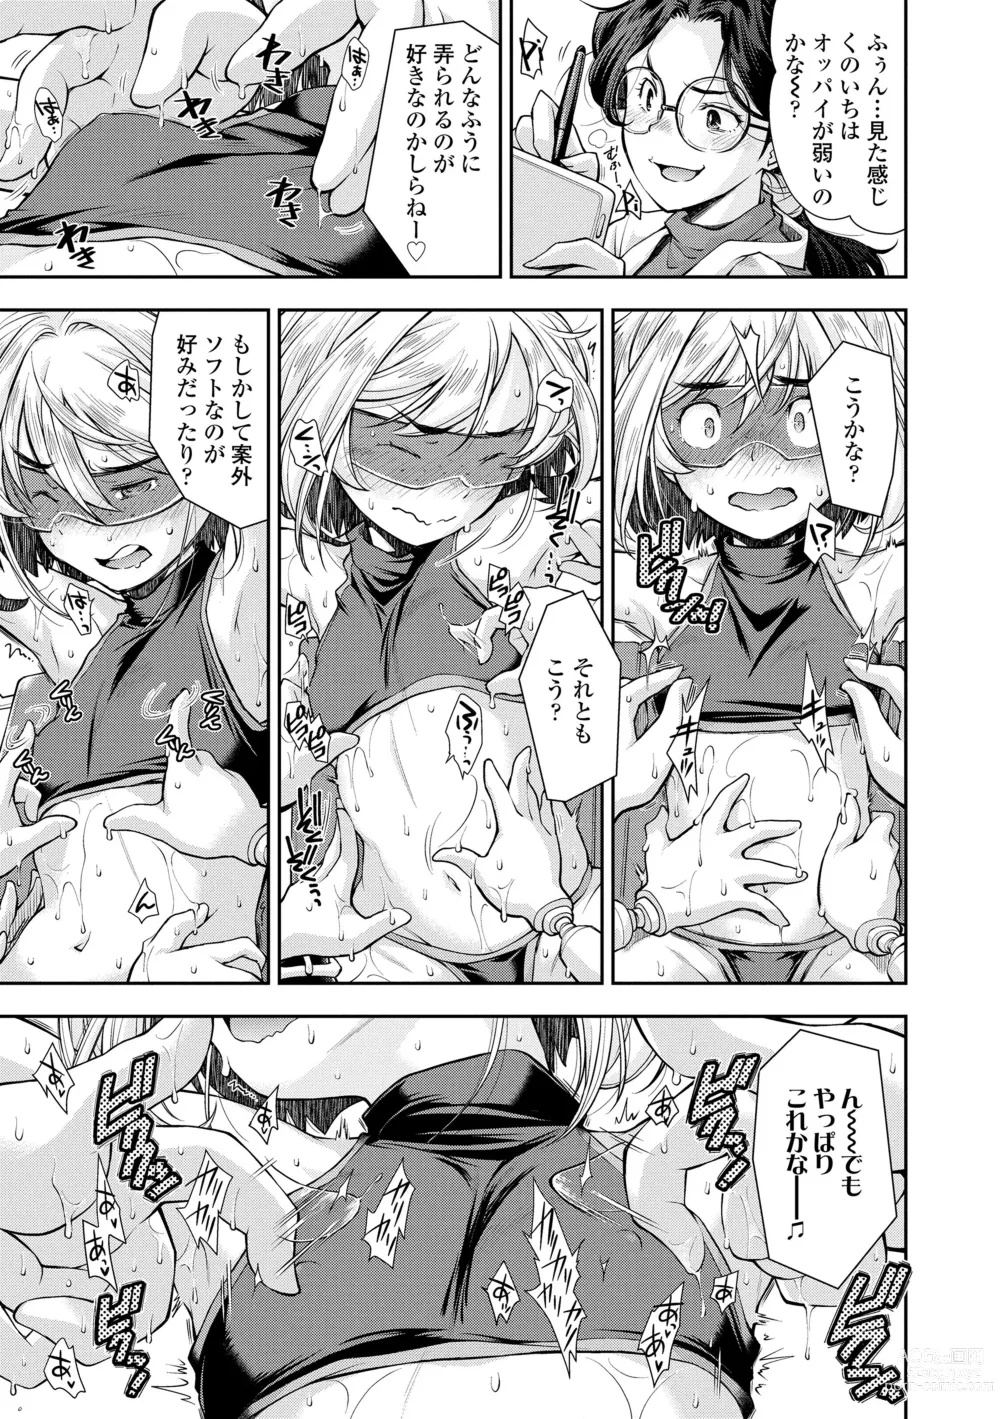 Page 177 of manga Onnanoko wa Sono Yubi no Ugoki ni Yowain desu